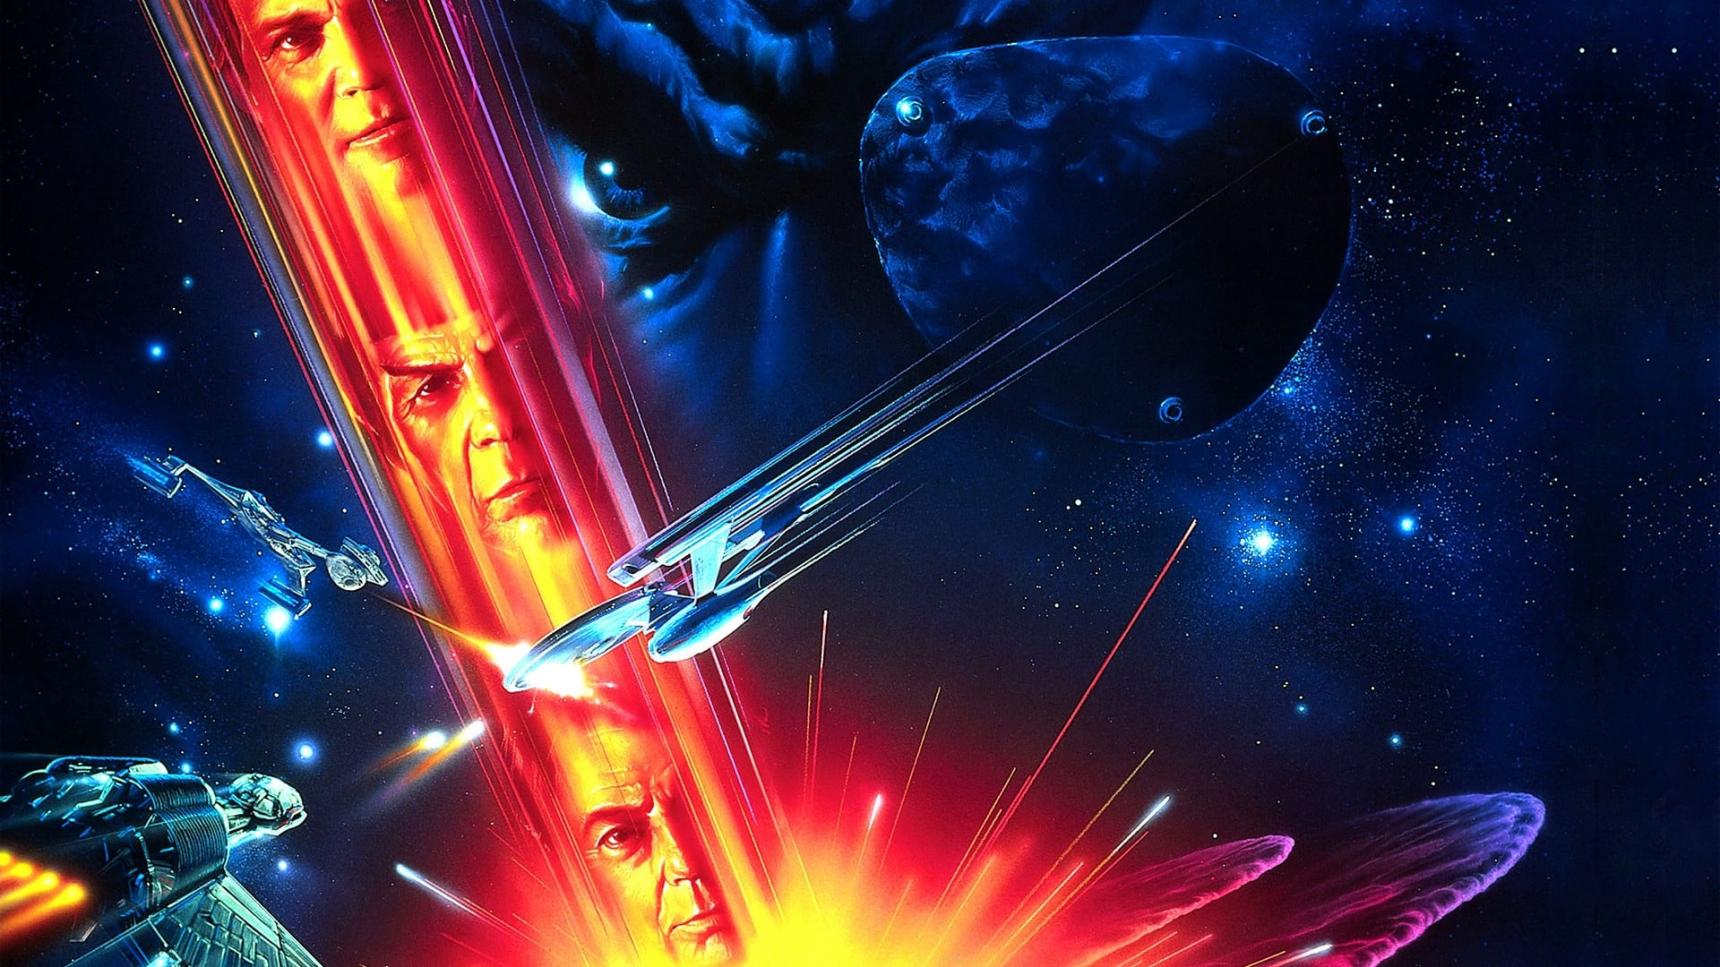 poster de Star Trek VI: Aquel país desconocido